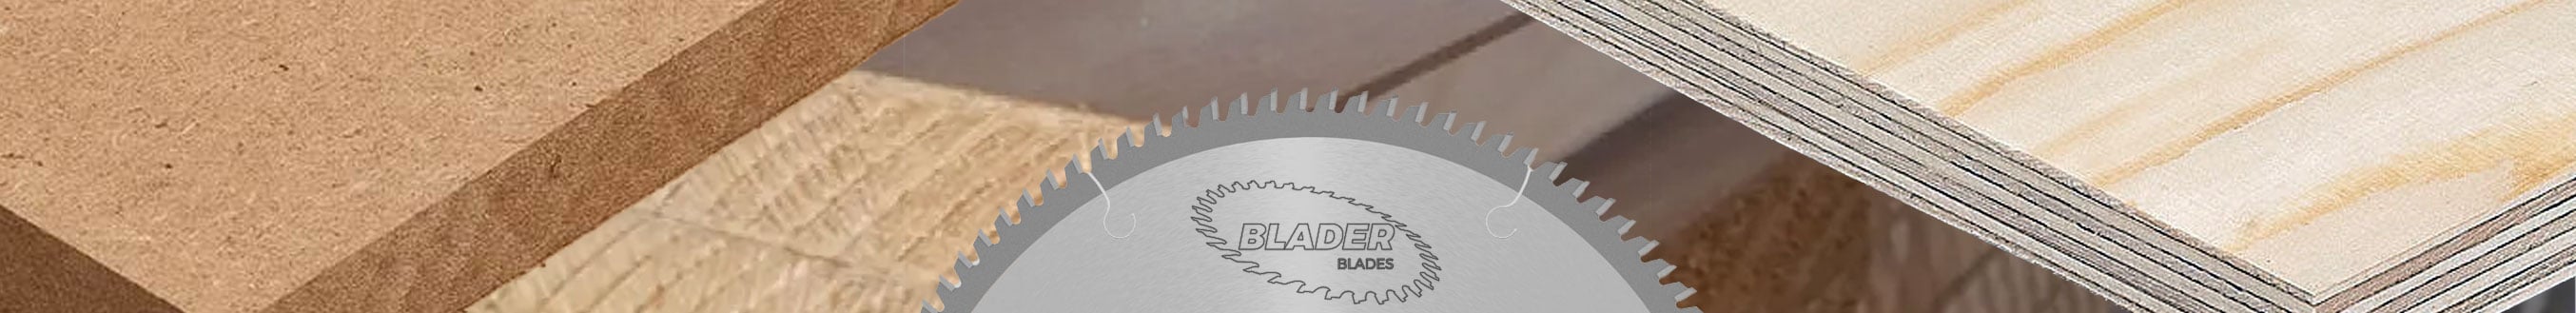 Circular saw blades | Fraisertools